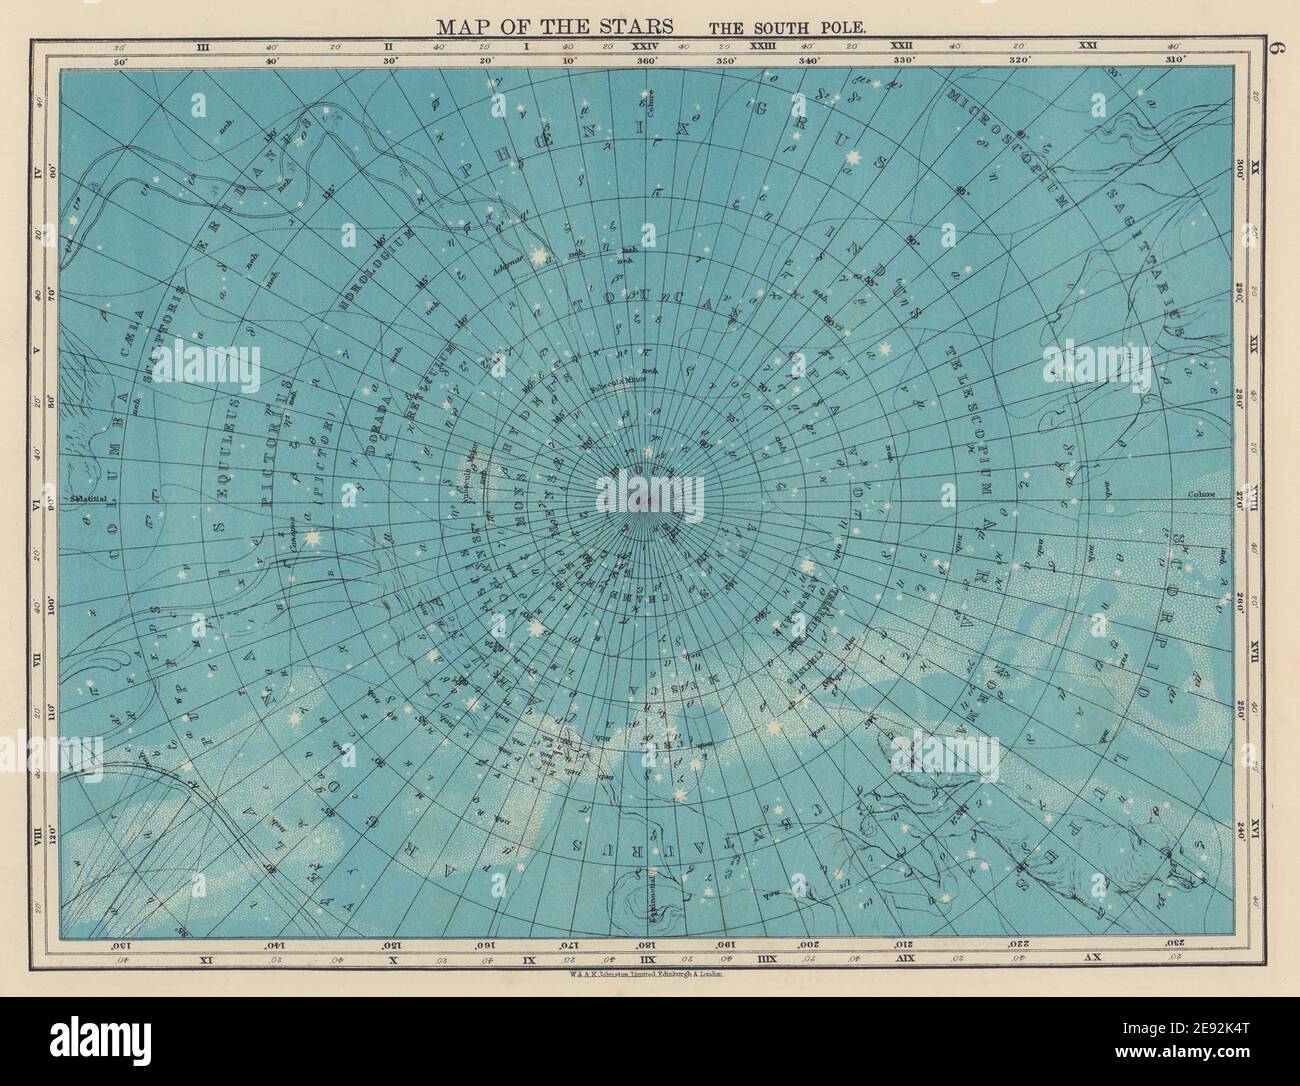 ASTRONOMÍA. Mapa de las estrellas. El Polo Sur. Constelaciones. JOHNSTON 1901 Foto de stock